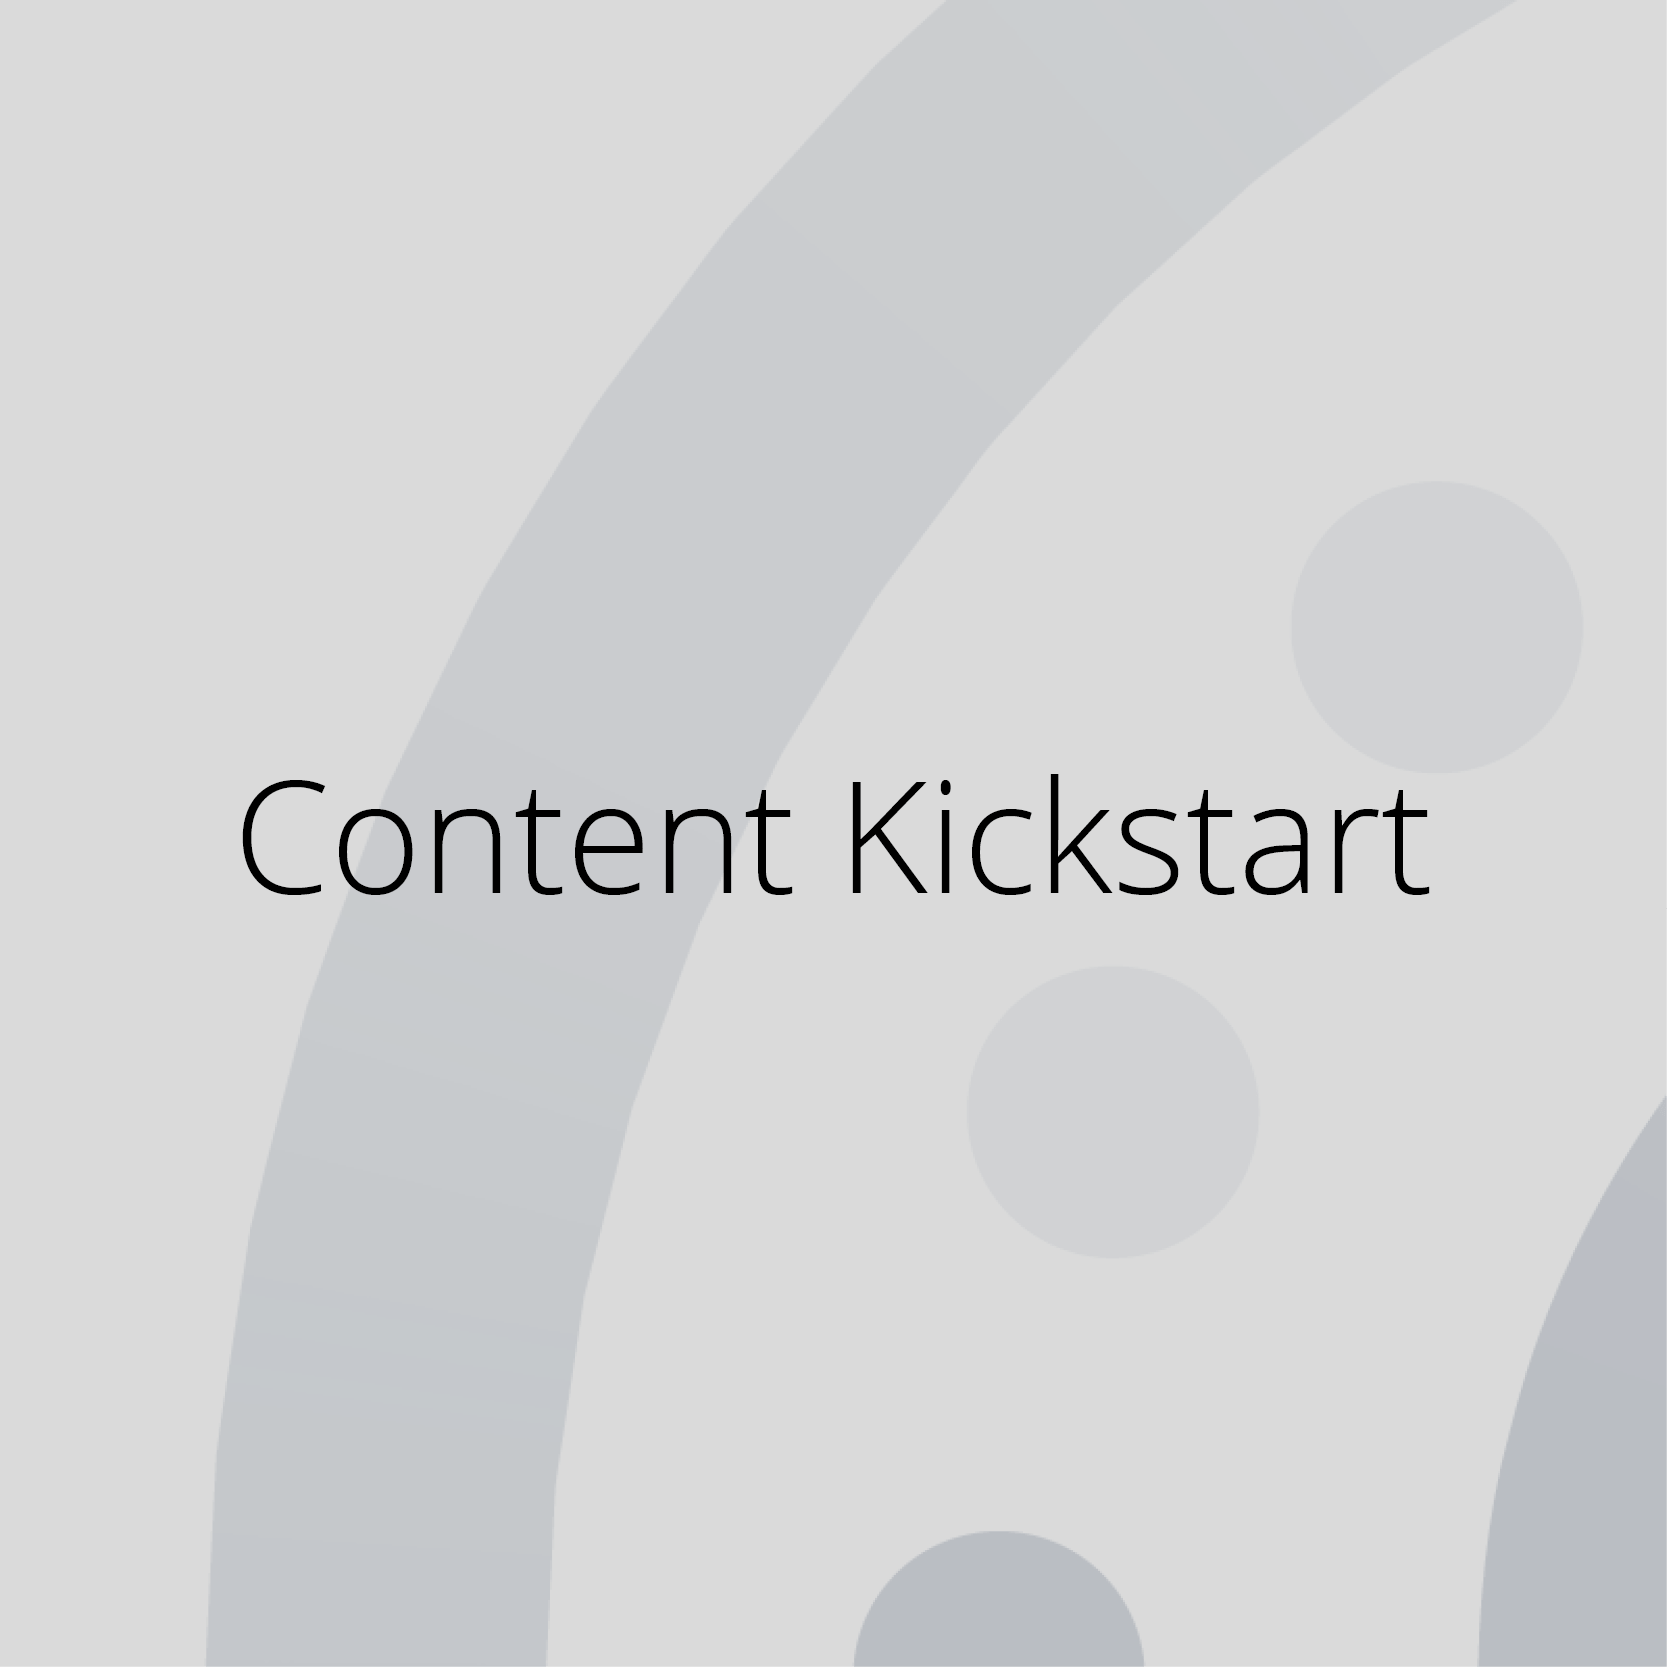 Content Kickstart